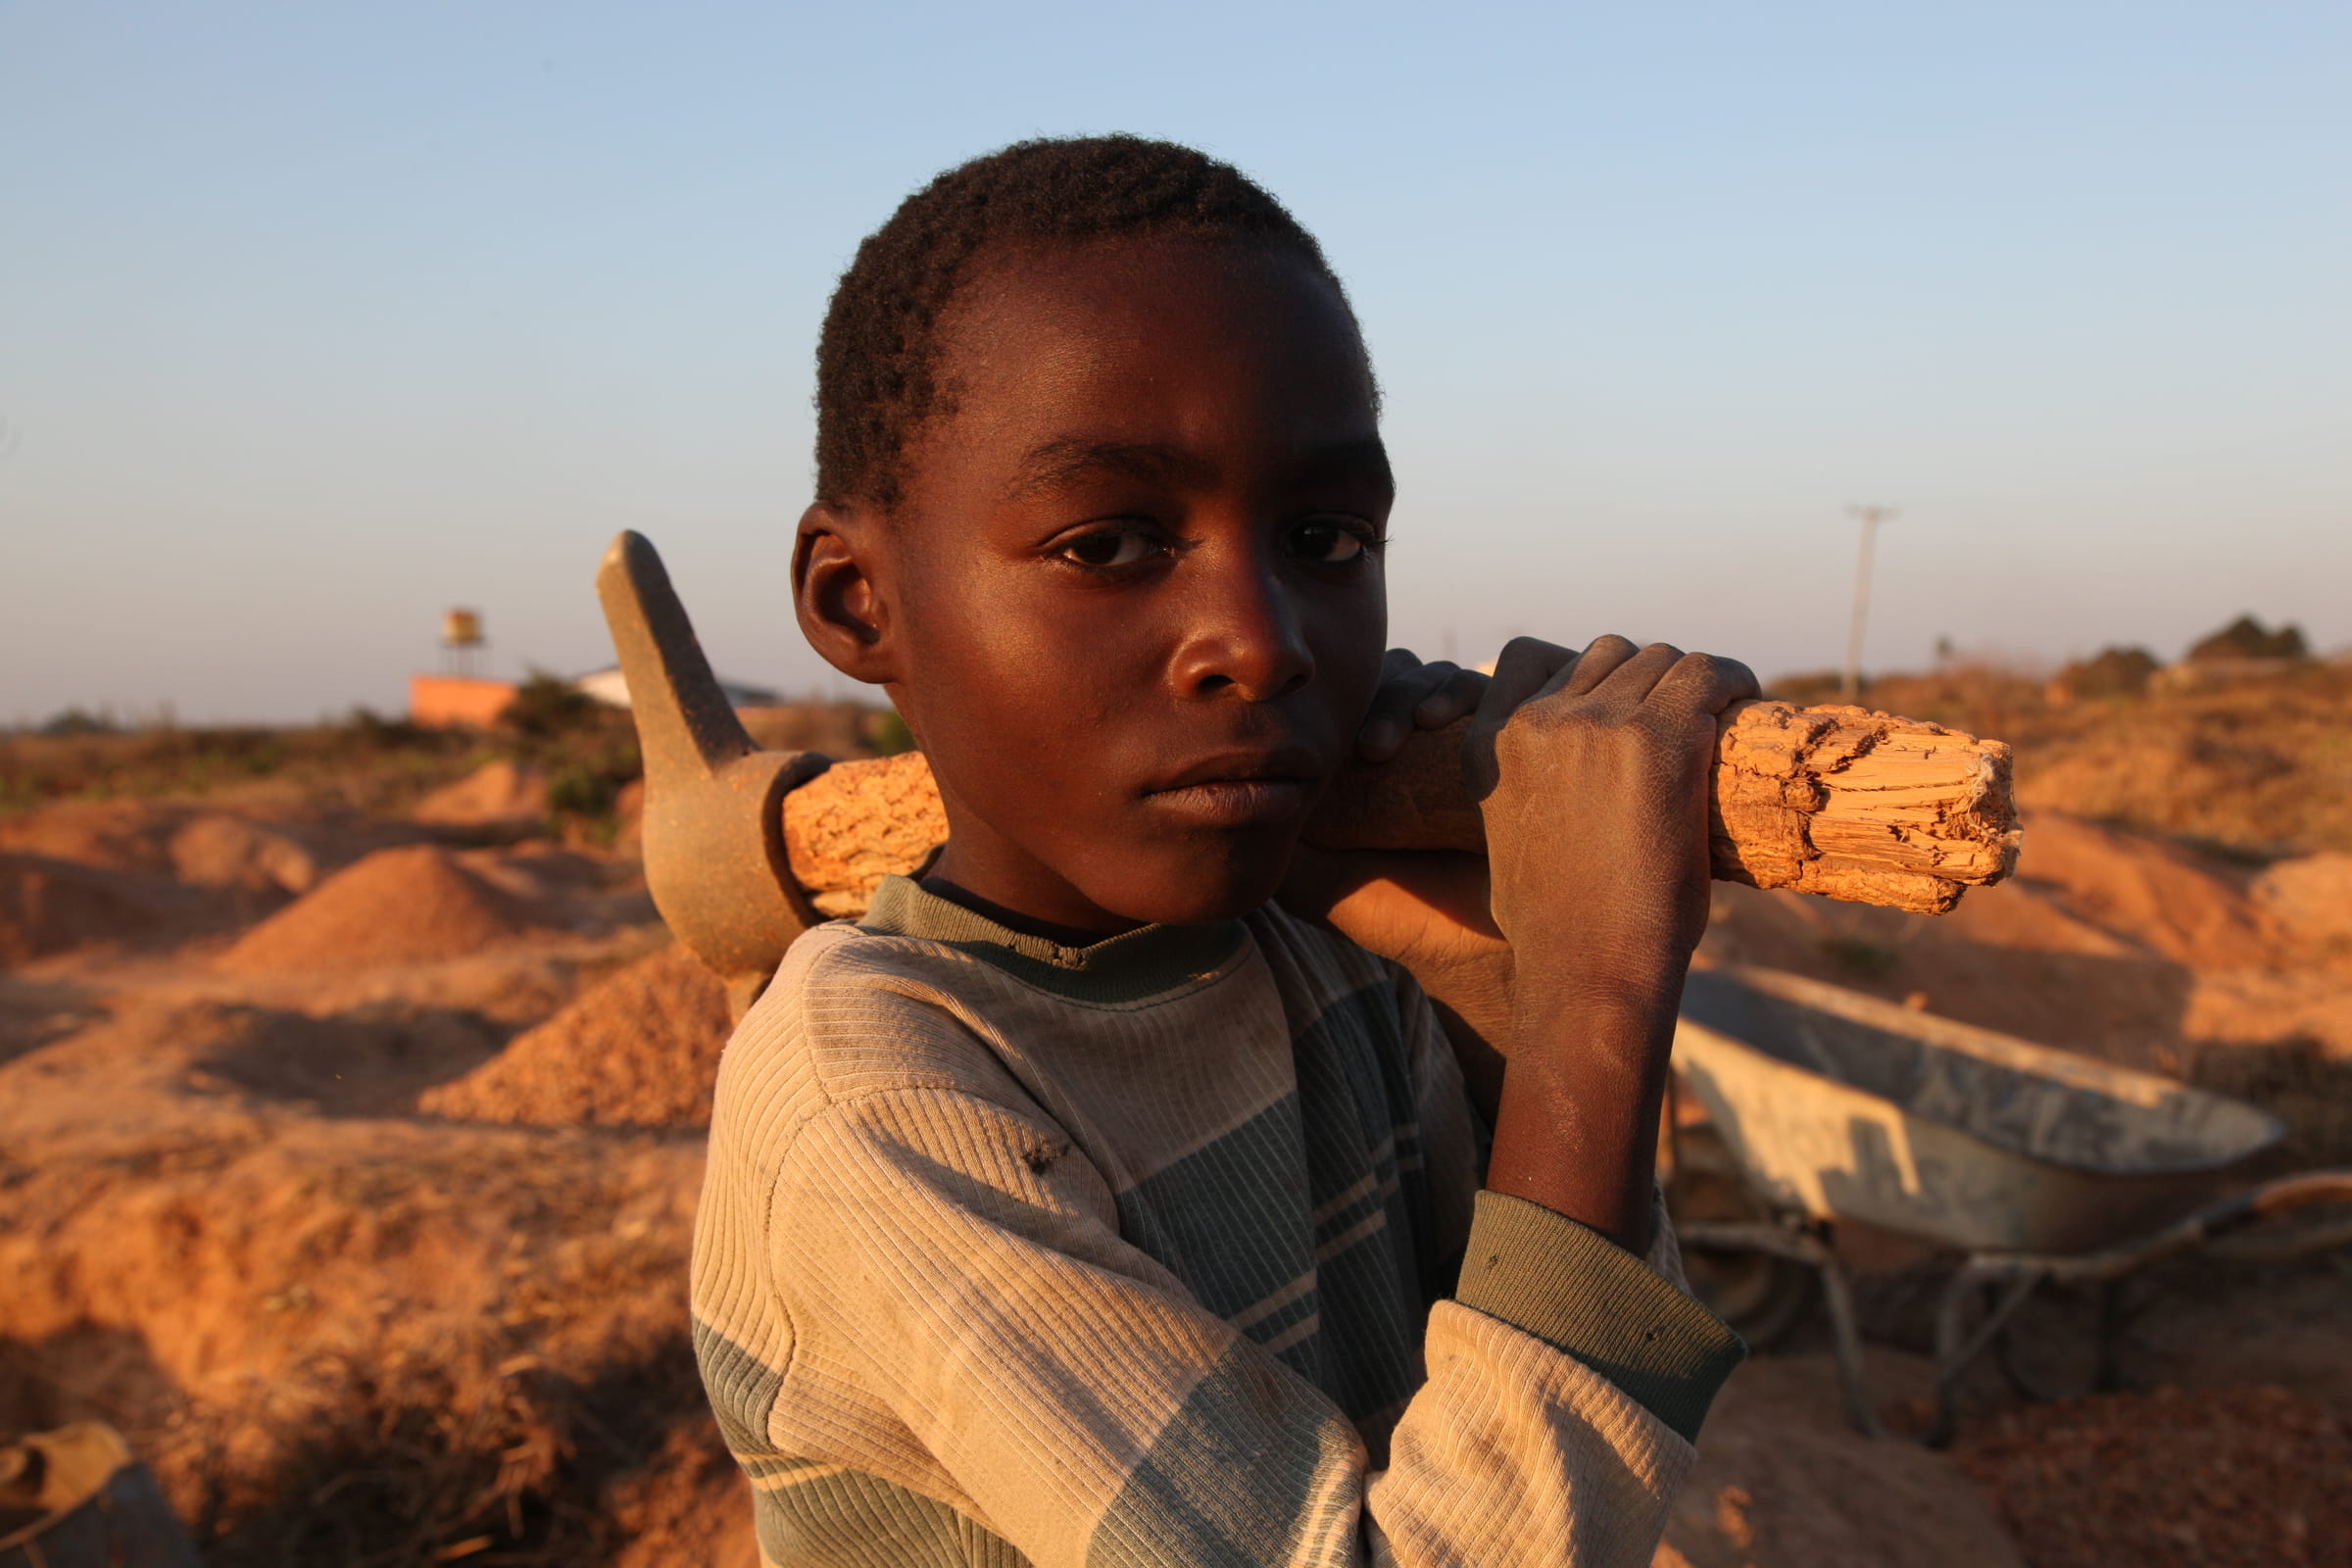 Sambischer Junge mit Spitzhacke (Quelle: Kindernothilfe)